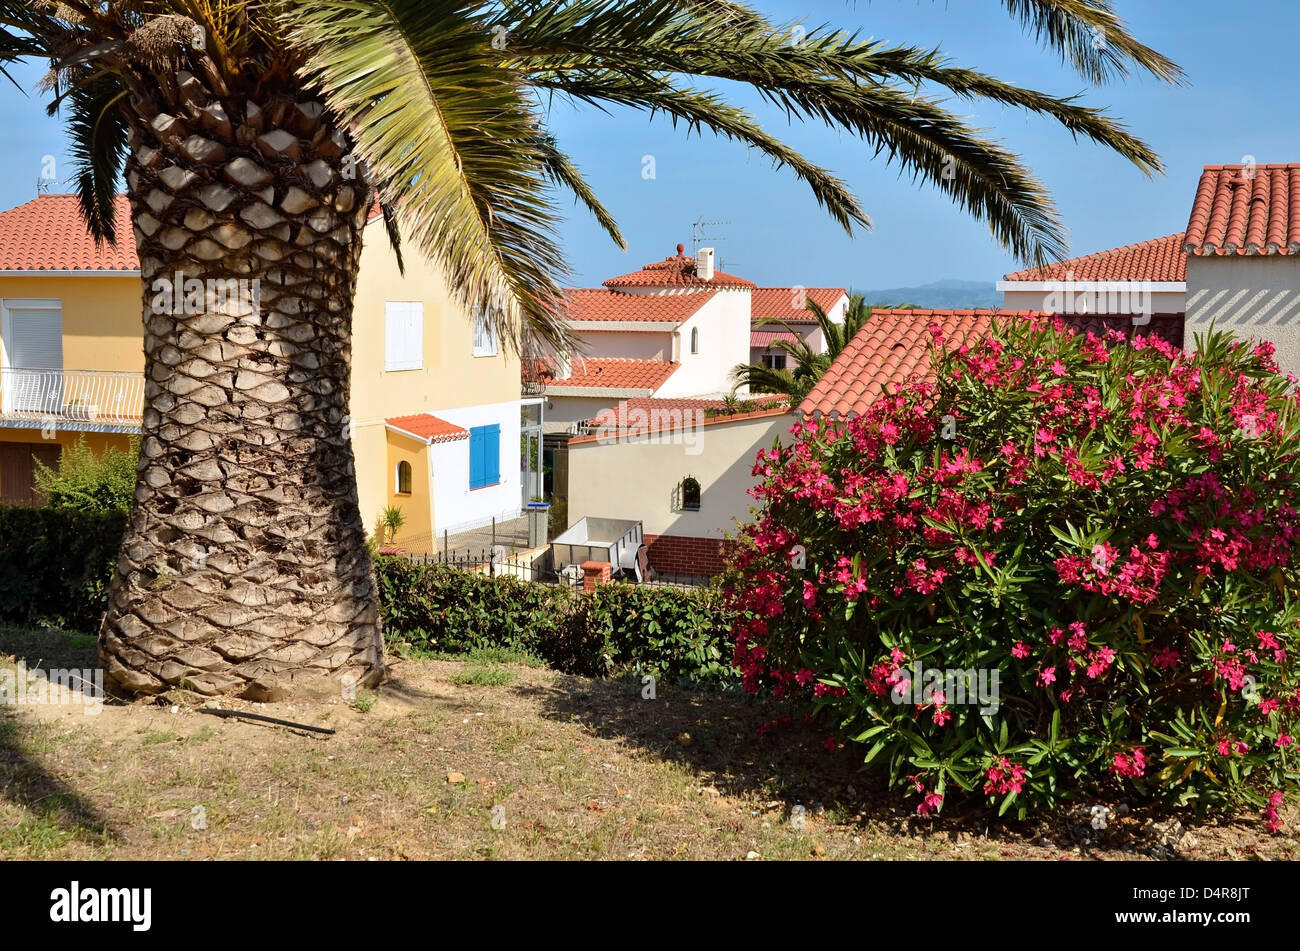 Palmiers et fleurs de laurier-rose (Nerium oleander rouge) à Saint-Cyprien village, commune française située dans le département des Pyrénées-Orientales Banque D'Images